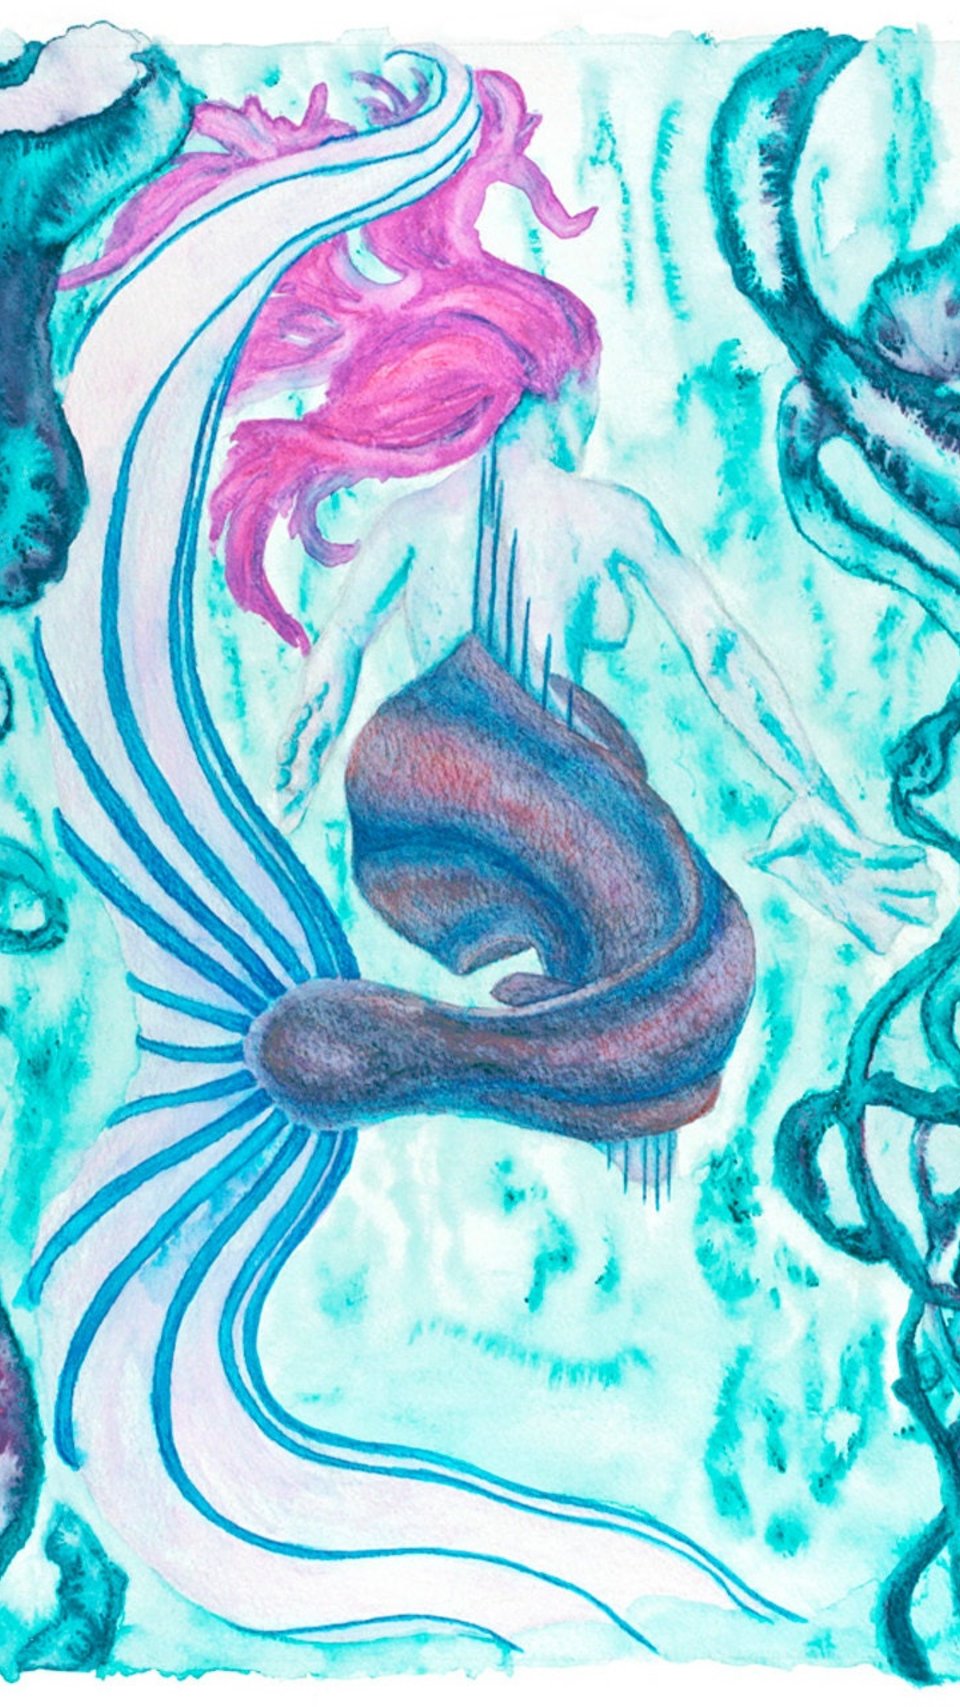 Mermaid Painting Wall Art Print 15x11 (38x28 cm), Watercolor, Teal and Magenta, Seaweed Underwater Scene, Fantasy Ocean Scene